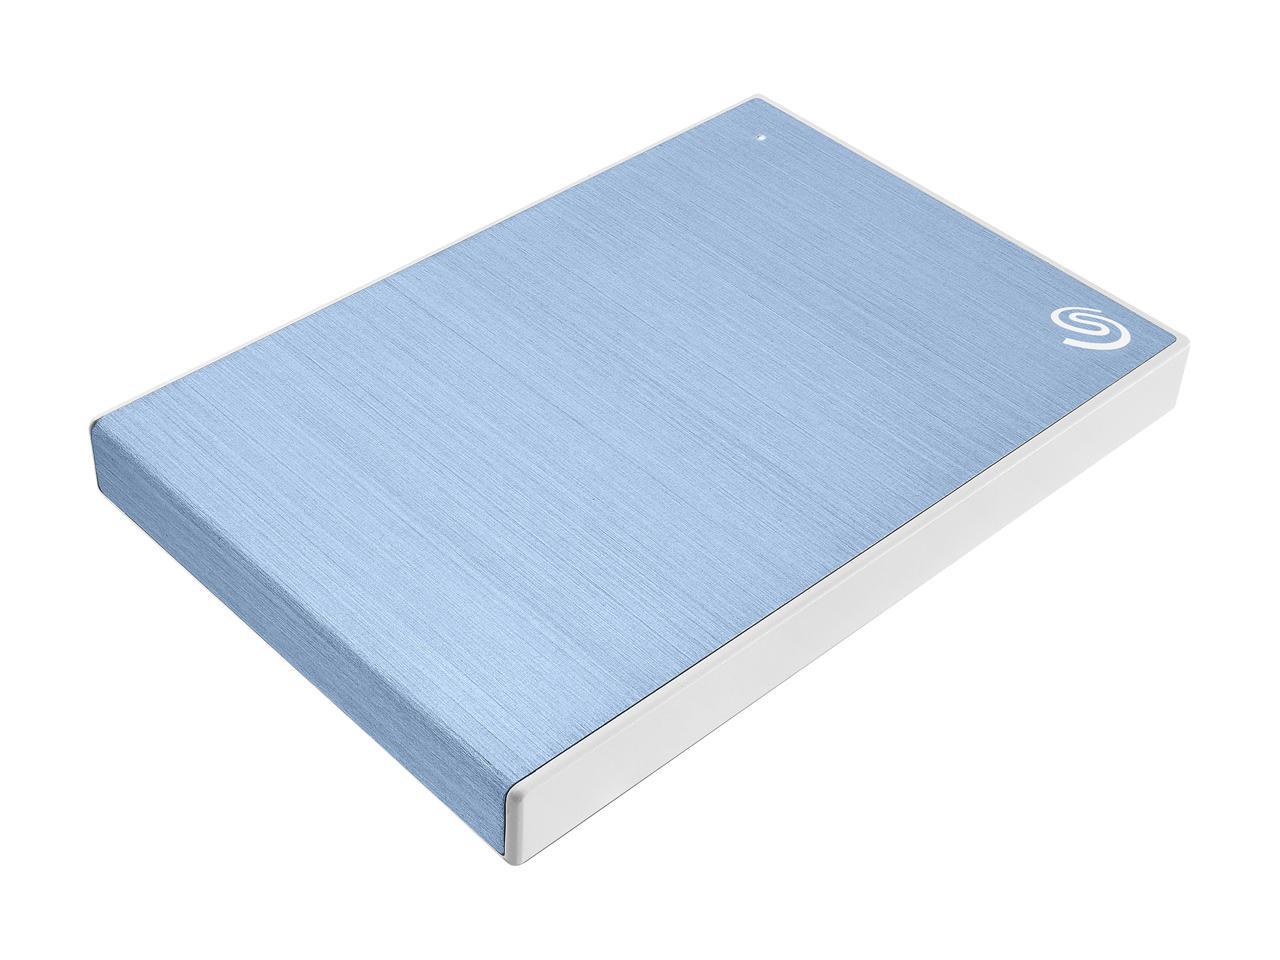 Seagate Backup Plus Slim Sthn1000402 1Tb Portable Hard Drive - External - Light Blue